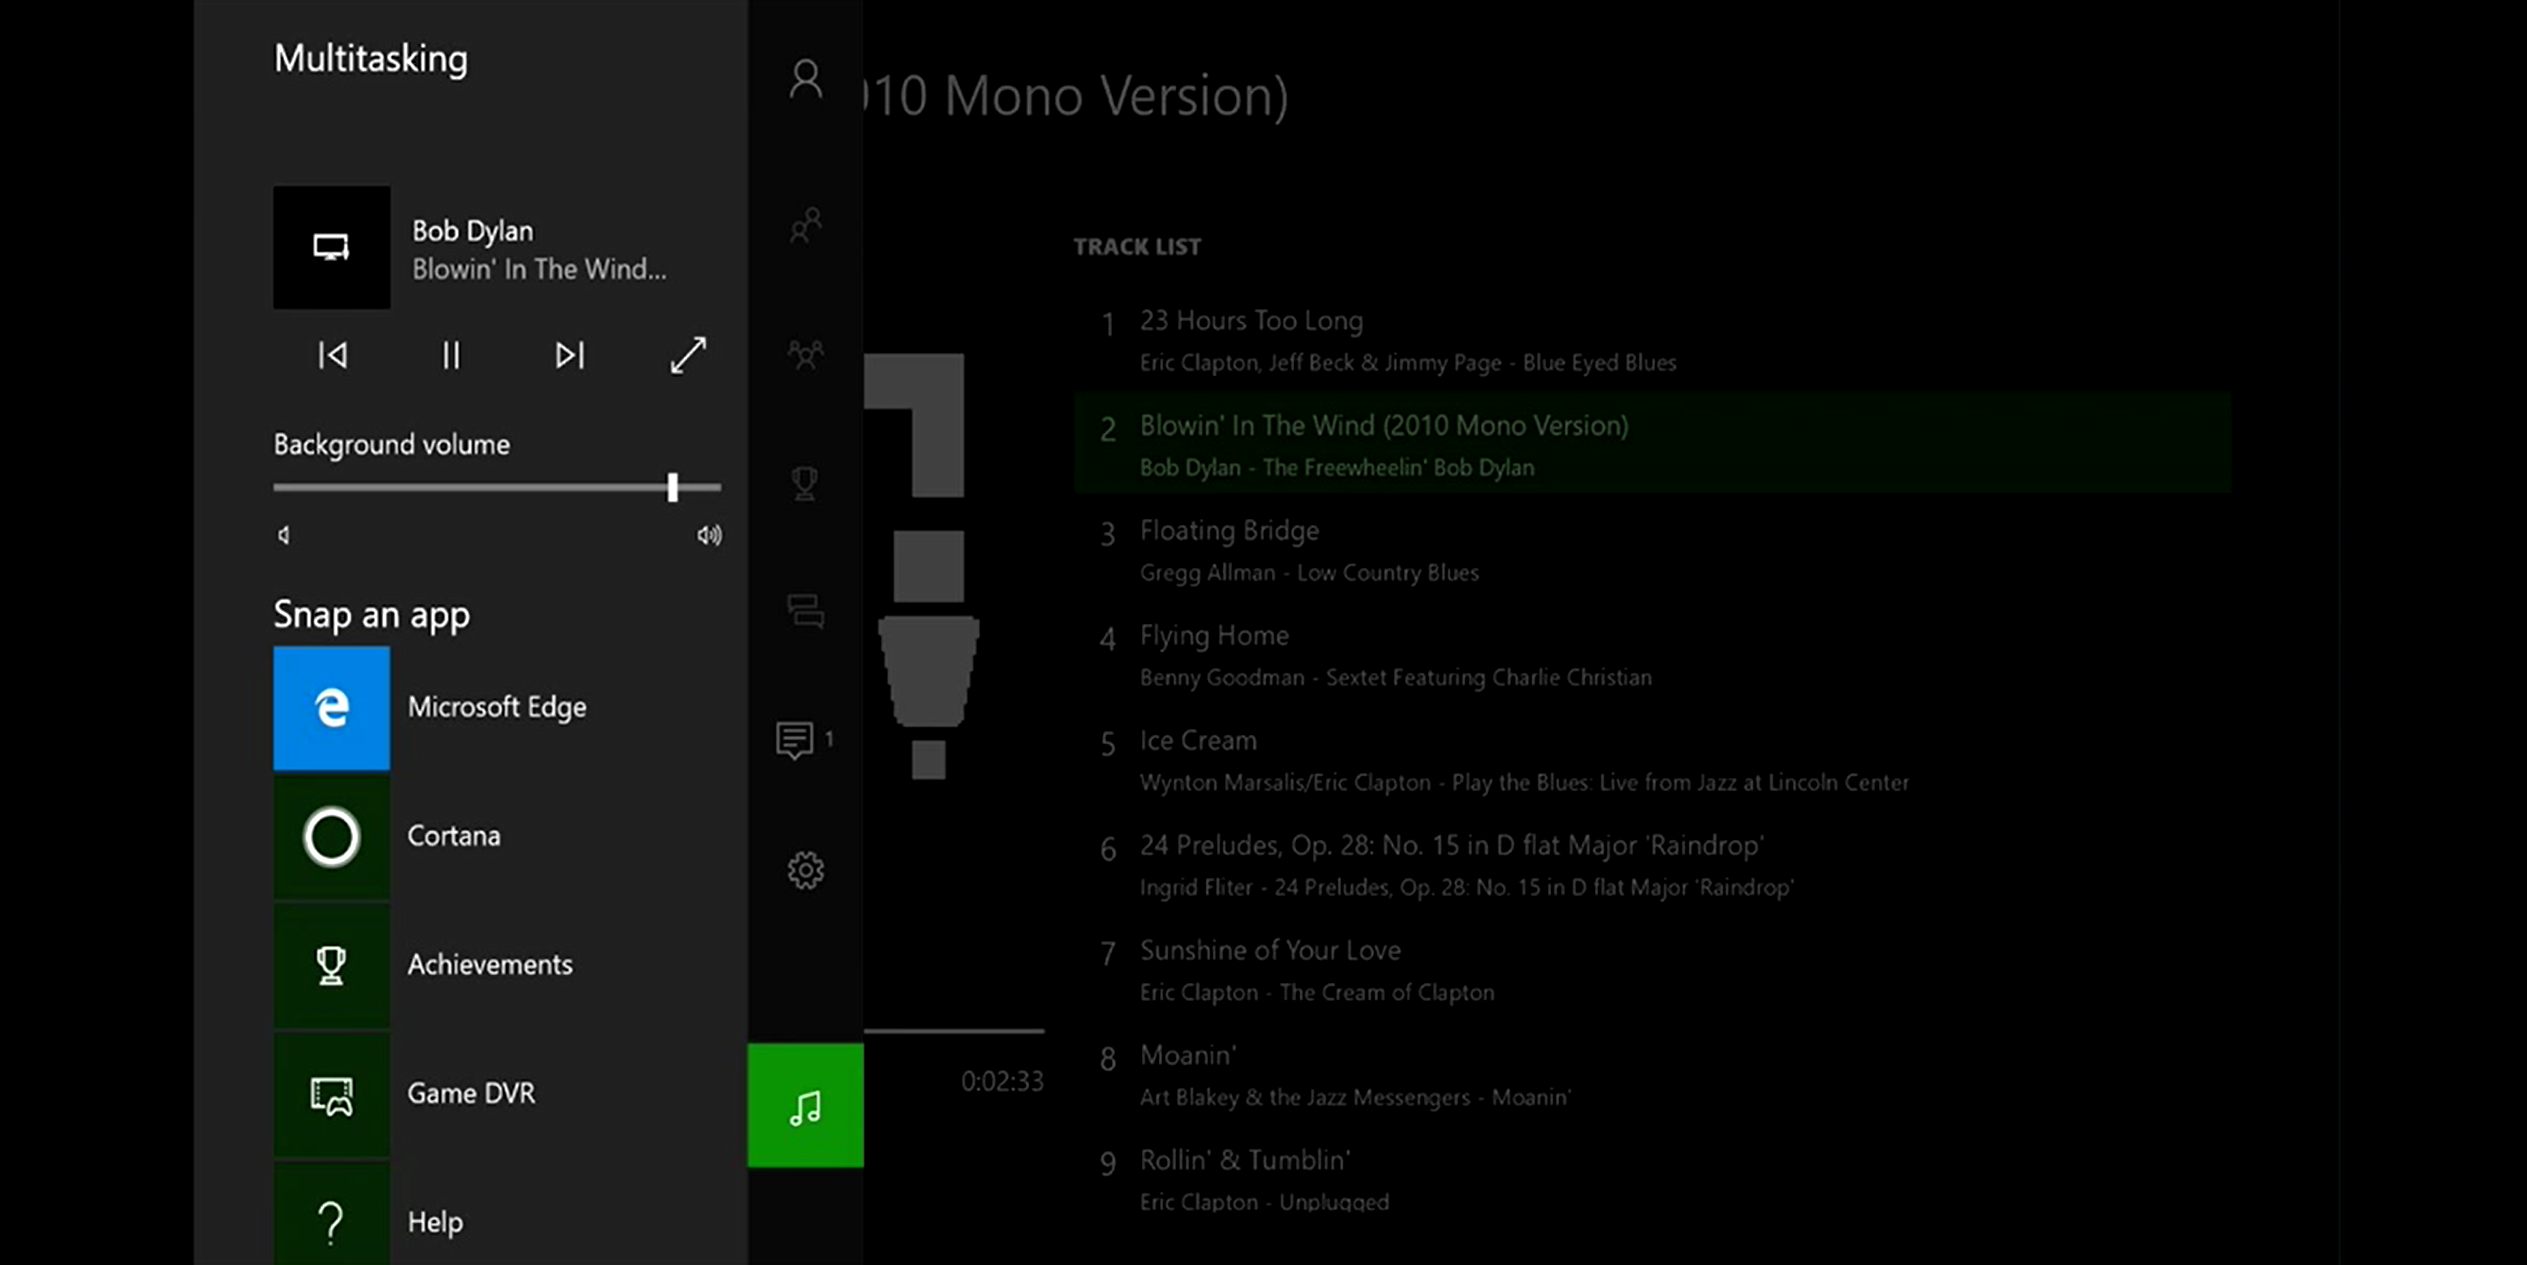 Xbox One Hintergrundmusik Player für USB-Geräte